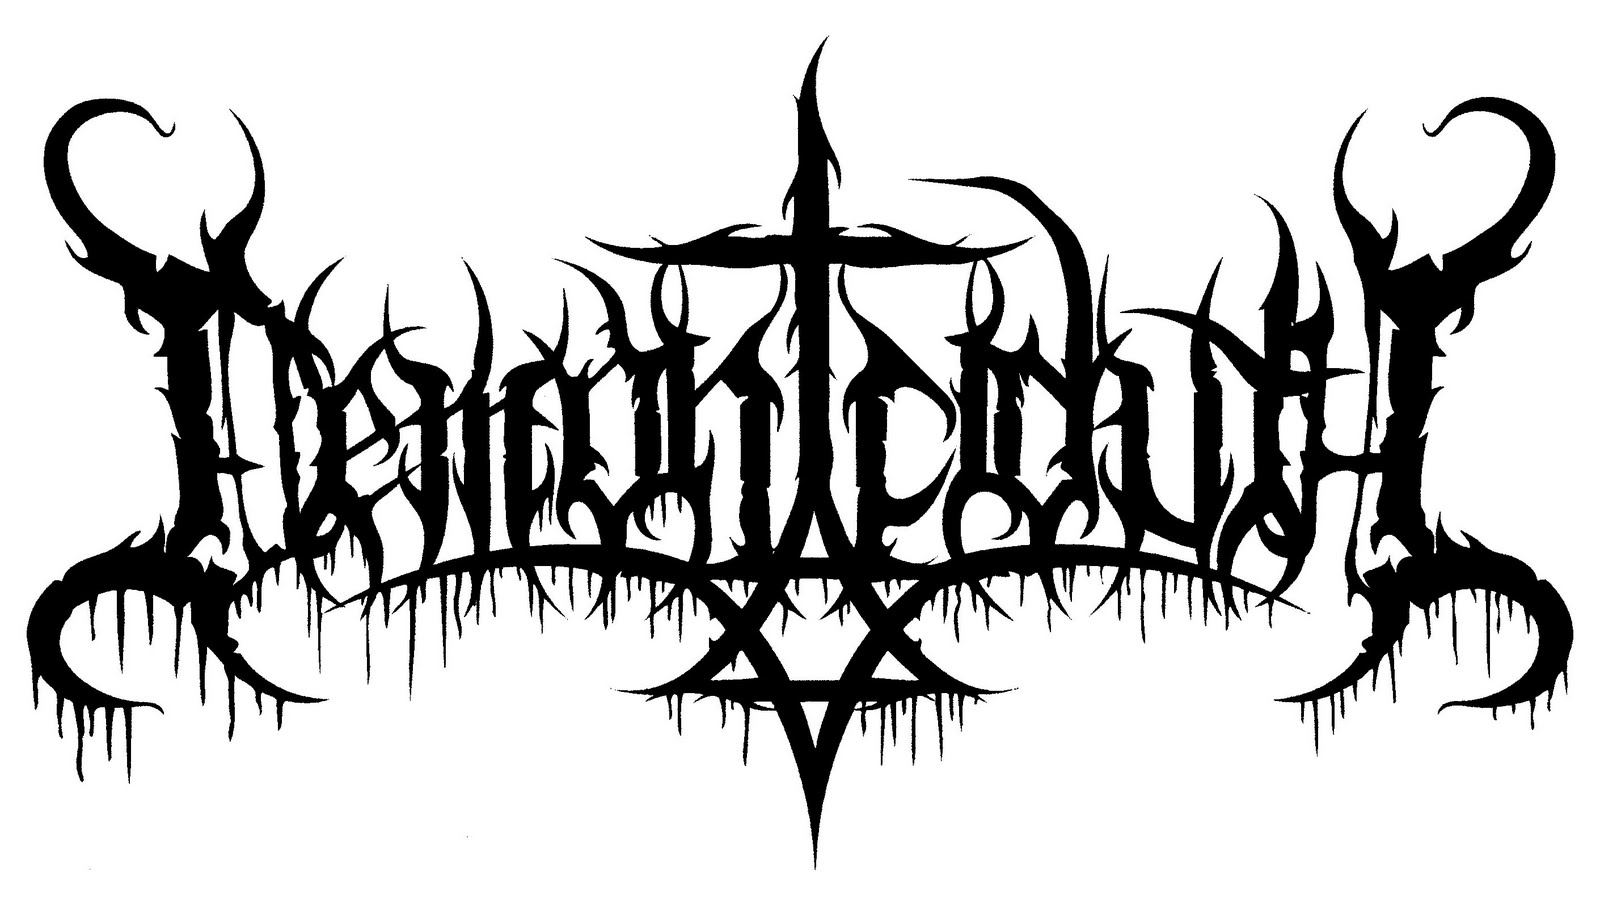 Тексты метал групп. Логотипы металл групп. Блэк металл группы логотипы. Блэк метал надпись в стиле. Надписи в стиле металл групп.